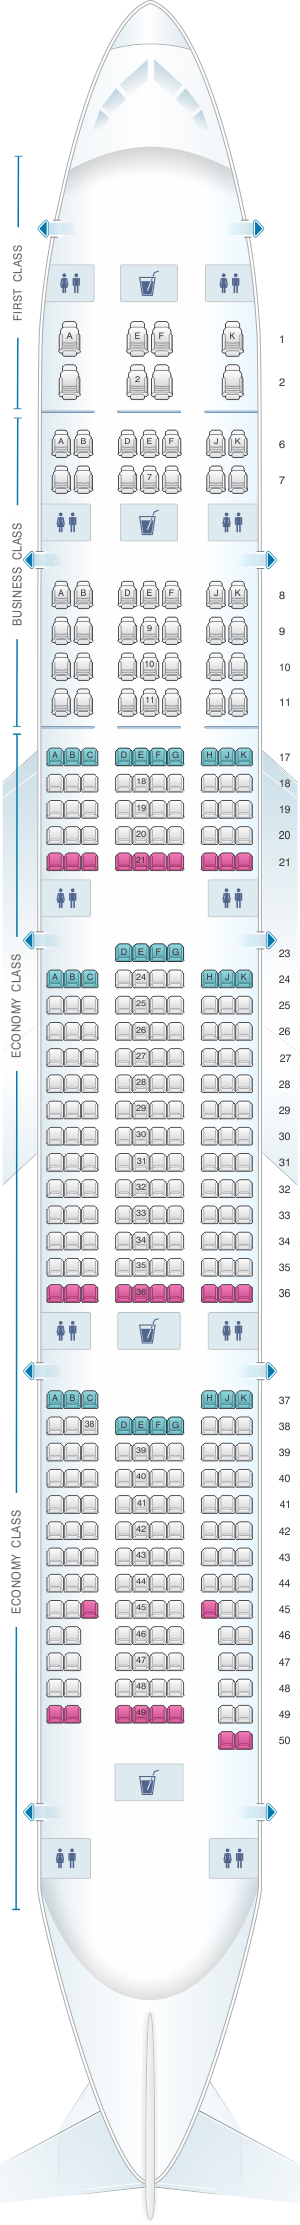 boeing 777 seating emirates